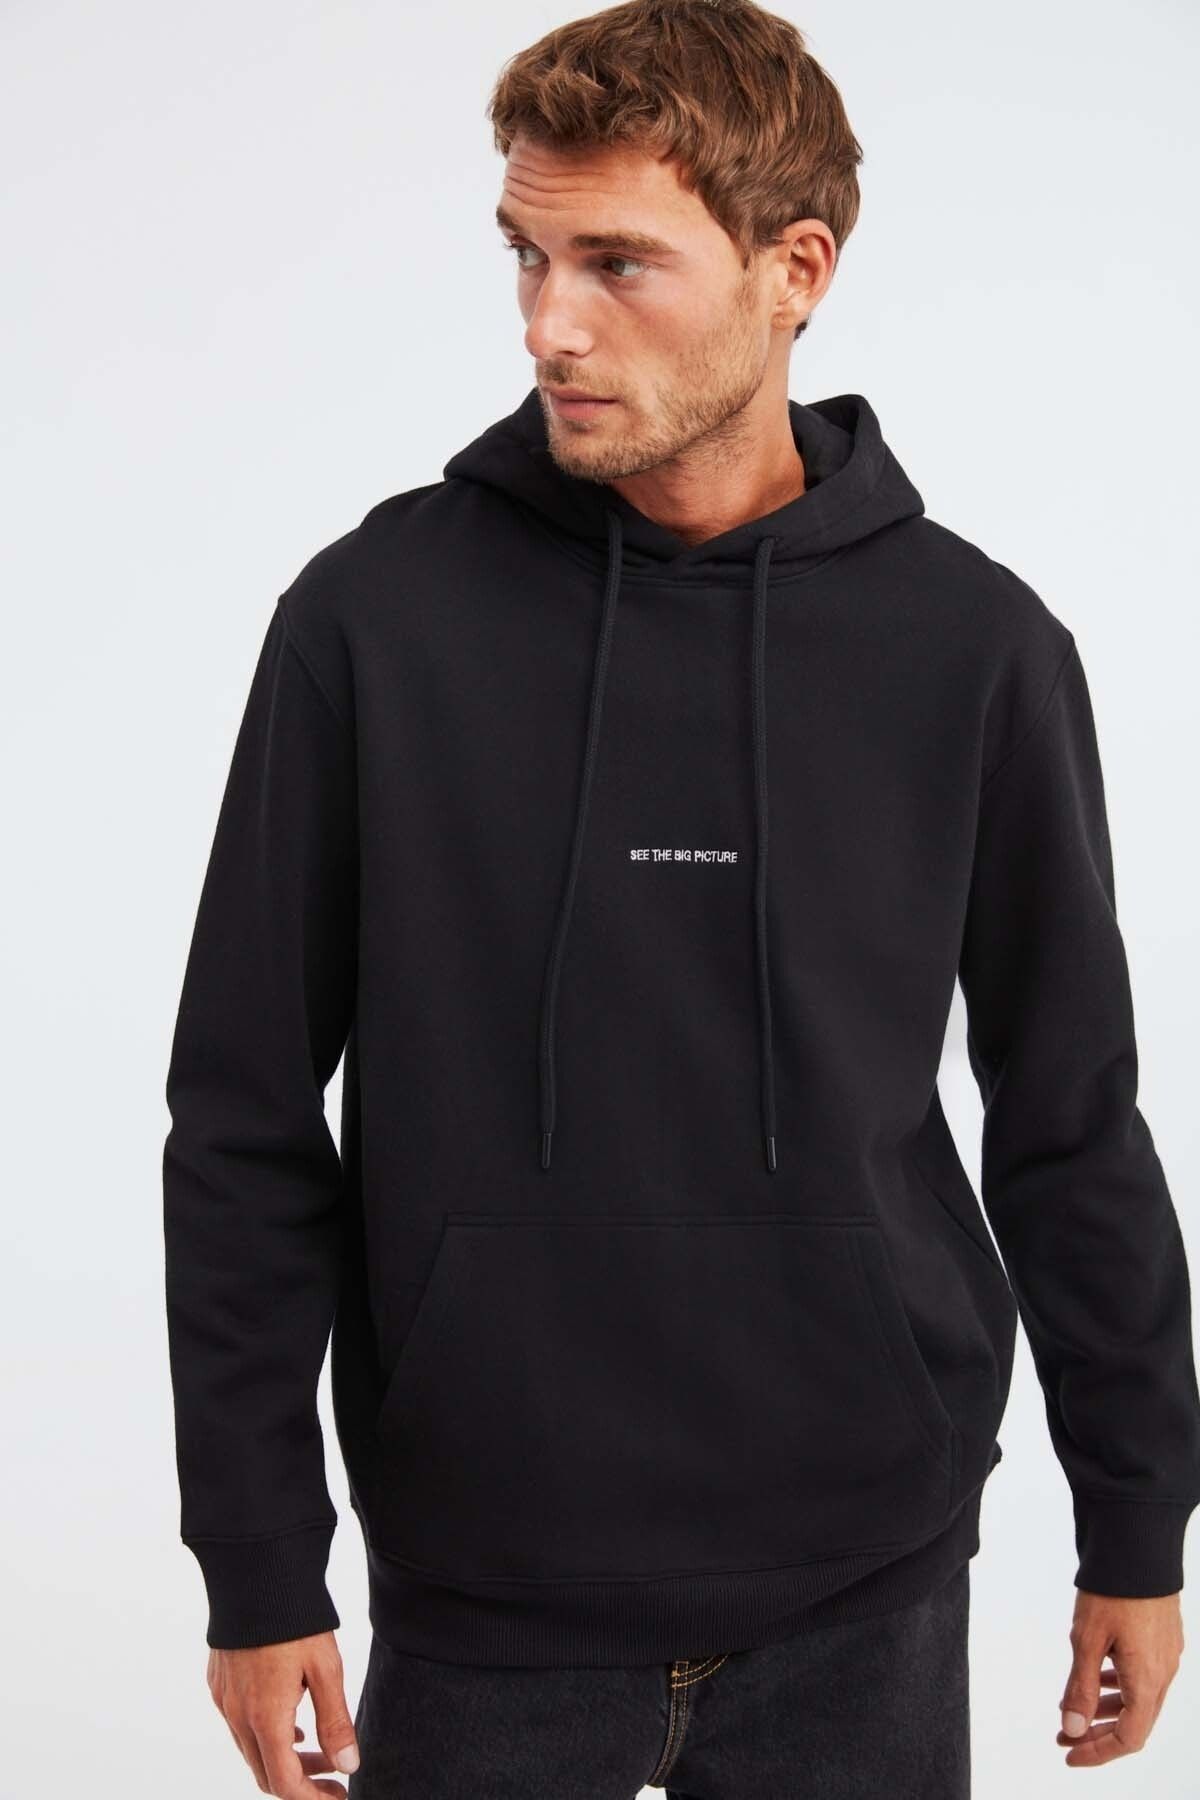 GRIMELANGE Sweatshirt - Black - Relaxed fit - Trendyol